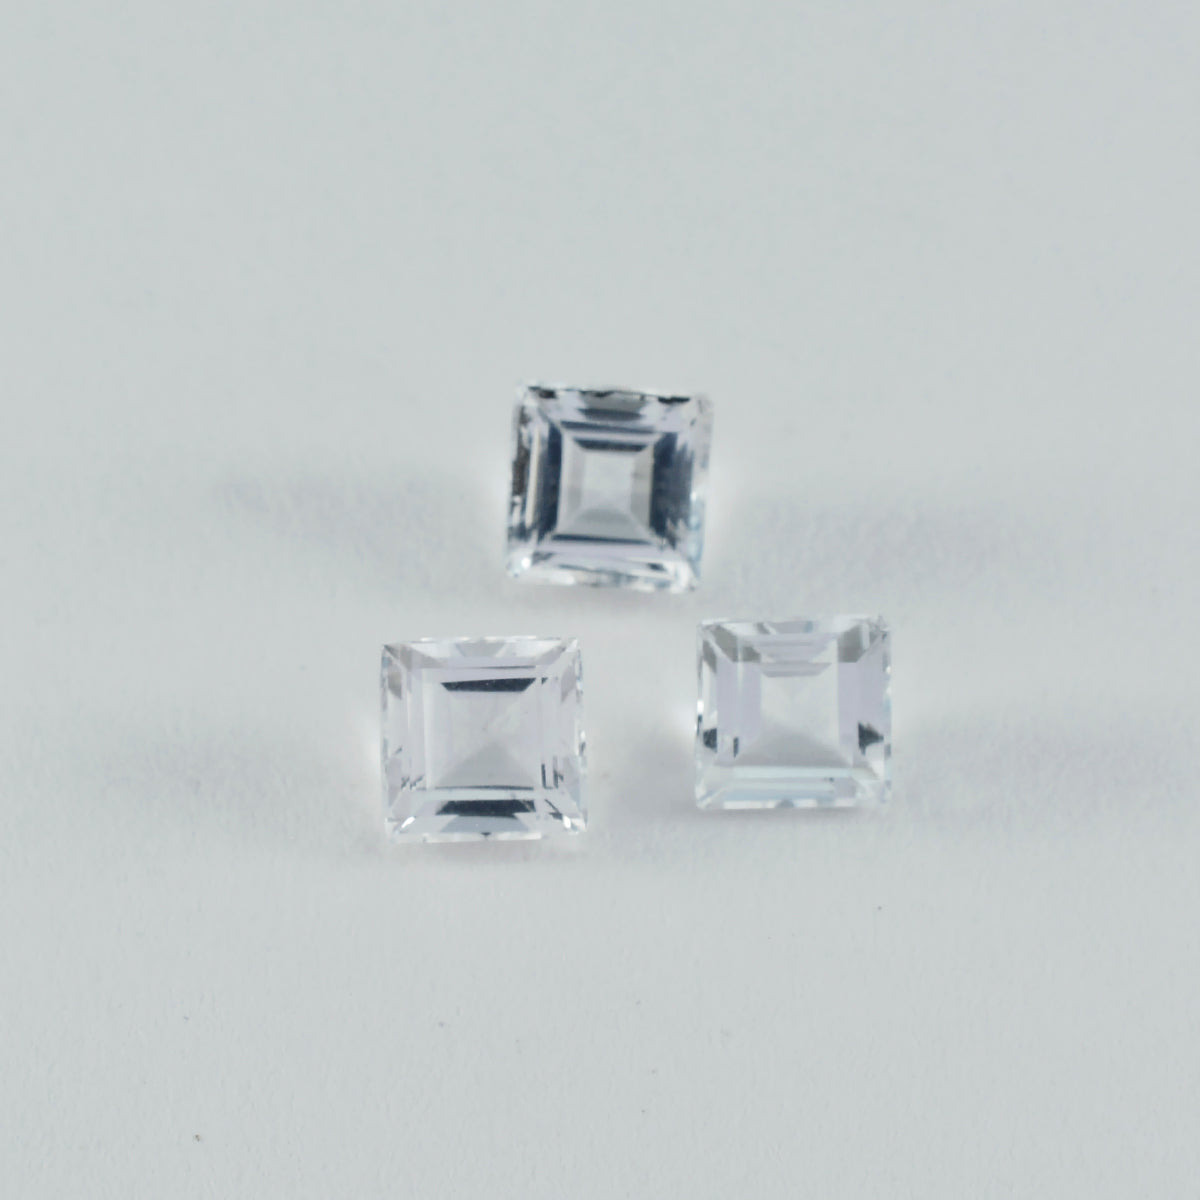 riyogems 1шт белый кристалл кварца ограненный 8x8 мм квадратной формы красивый качественный драгоценный камень